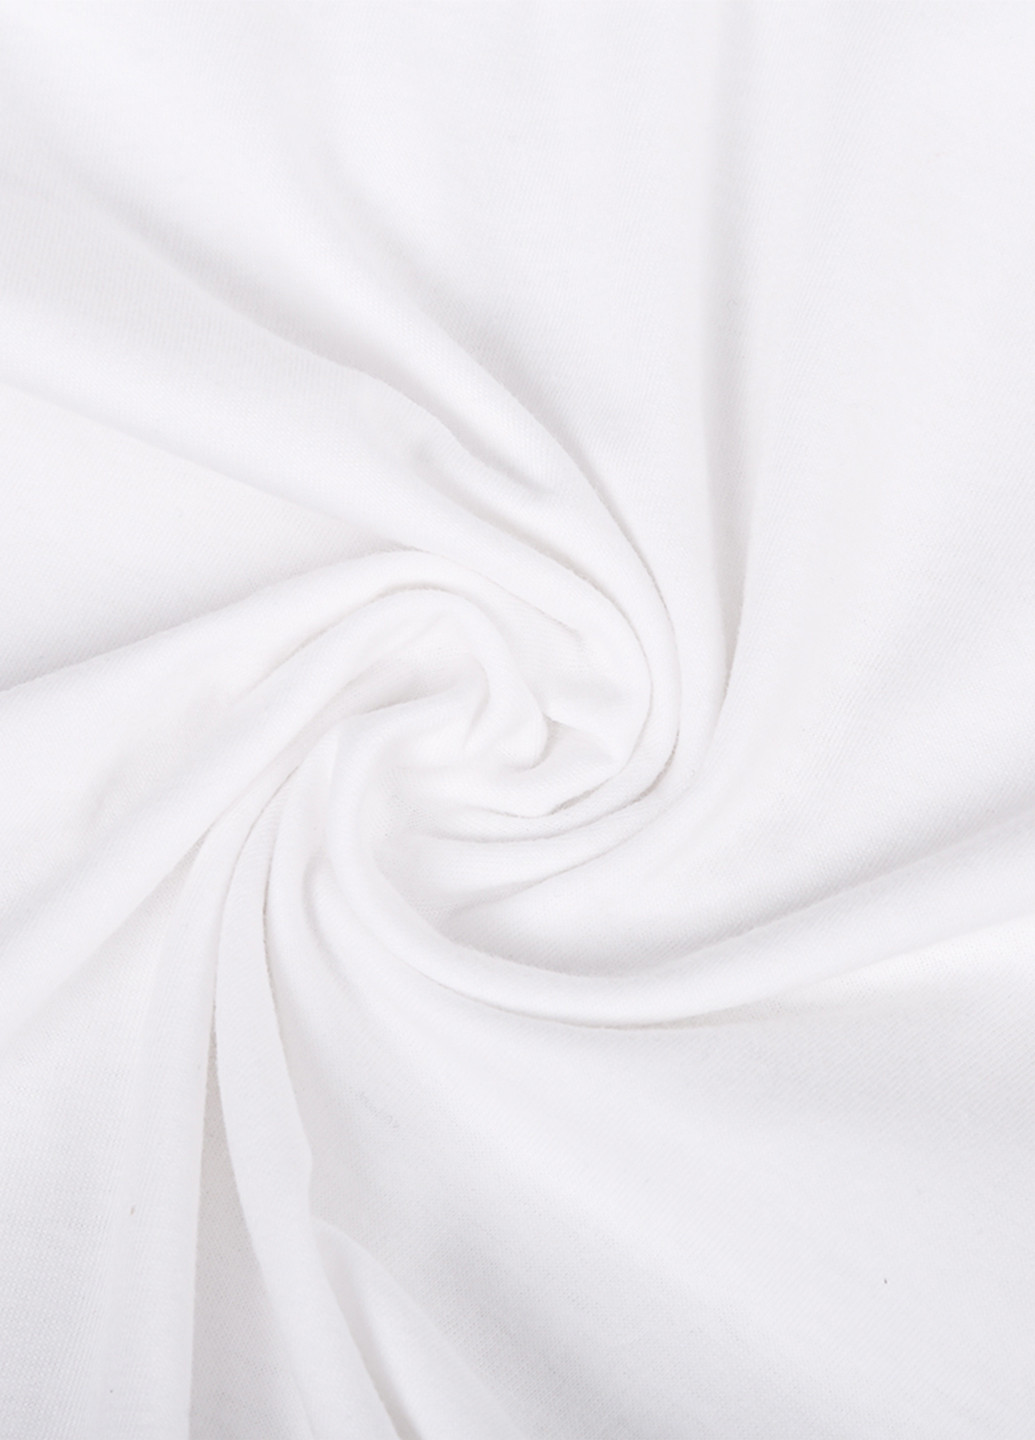 Біла демісезонна футболка дитяча роблокс (roblox) (9224-1713) MobiPrint